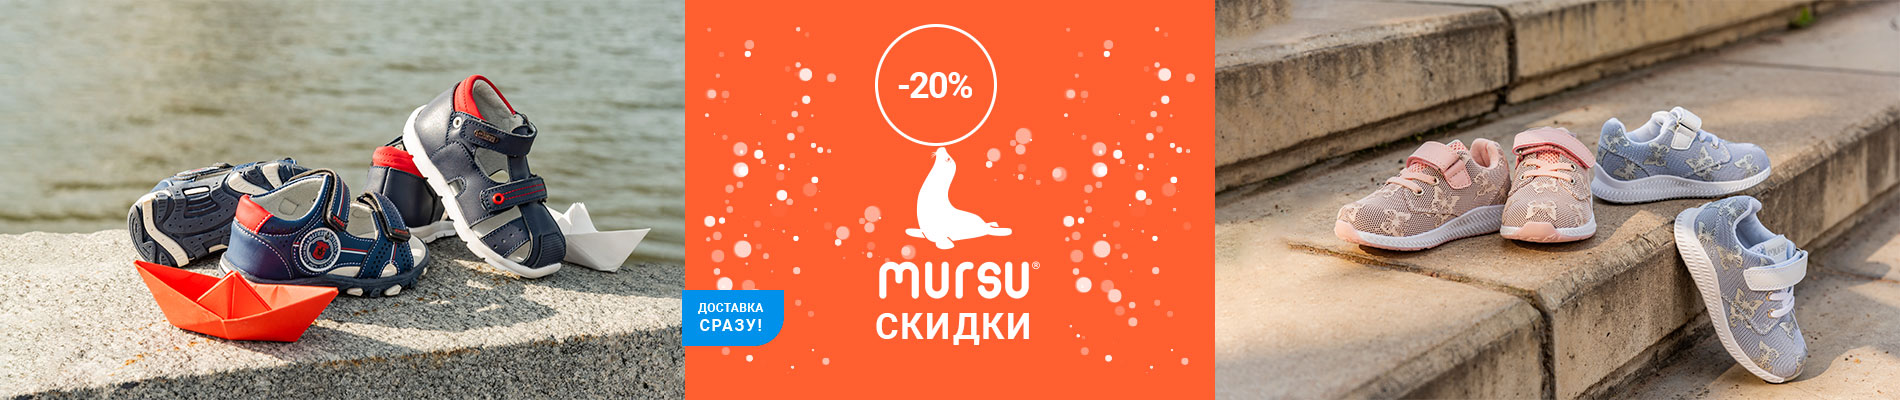 Скидки до 20%: детская обувь MURSU в Минске!